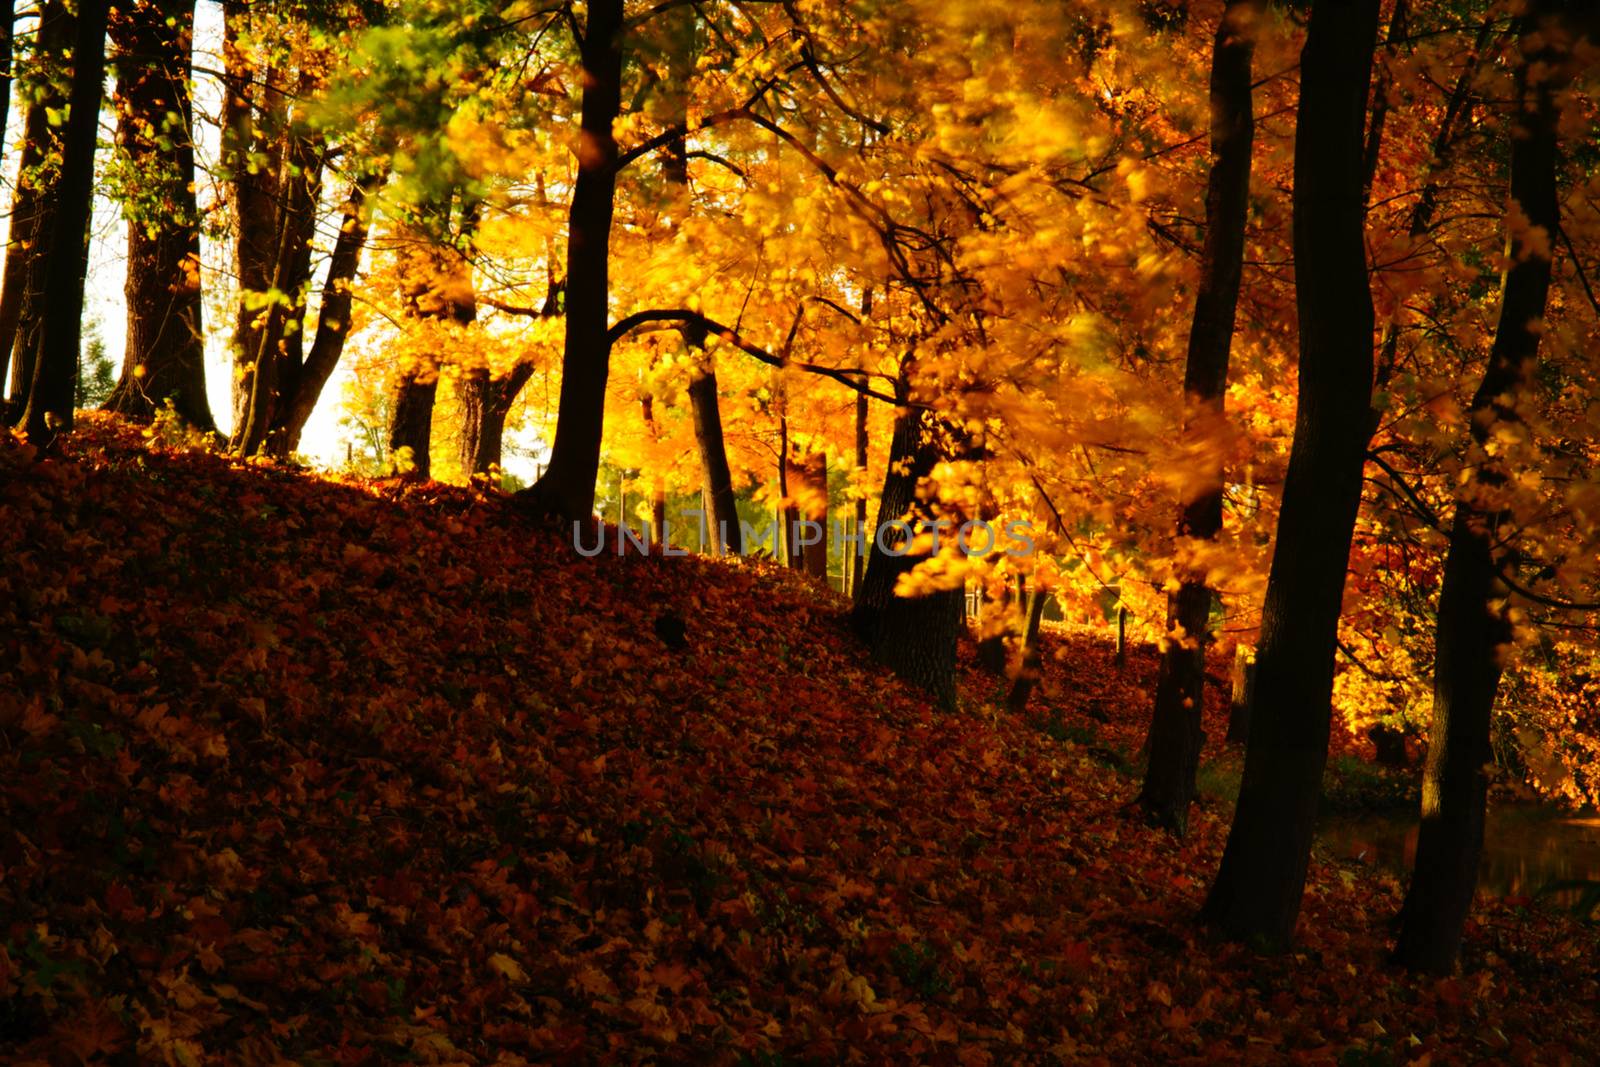 Autumn in Stirin Castle Park near Prague, Czech Republic by Jindrich_Blecha